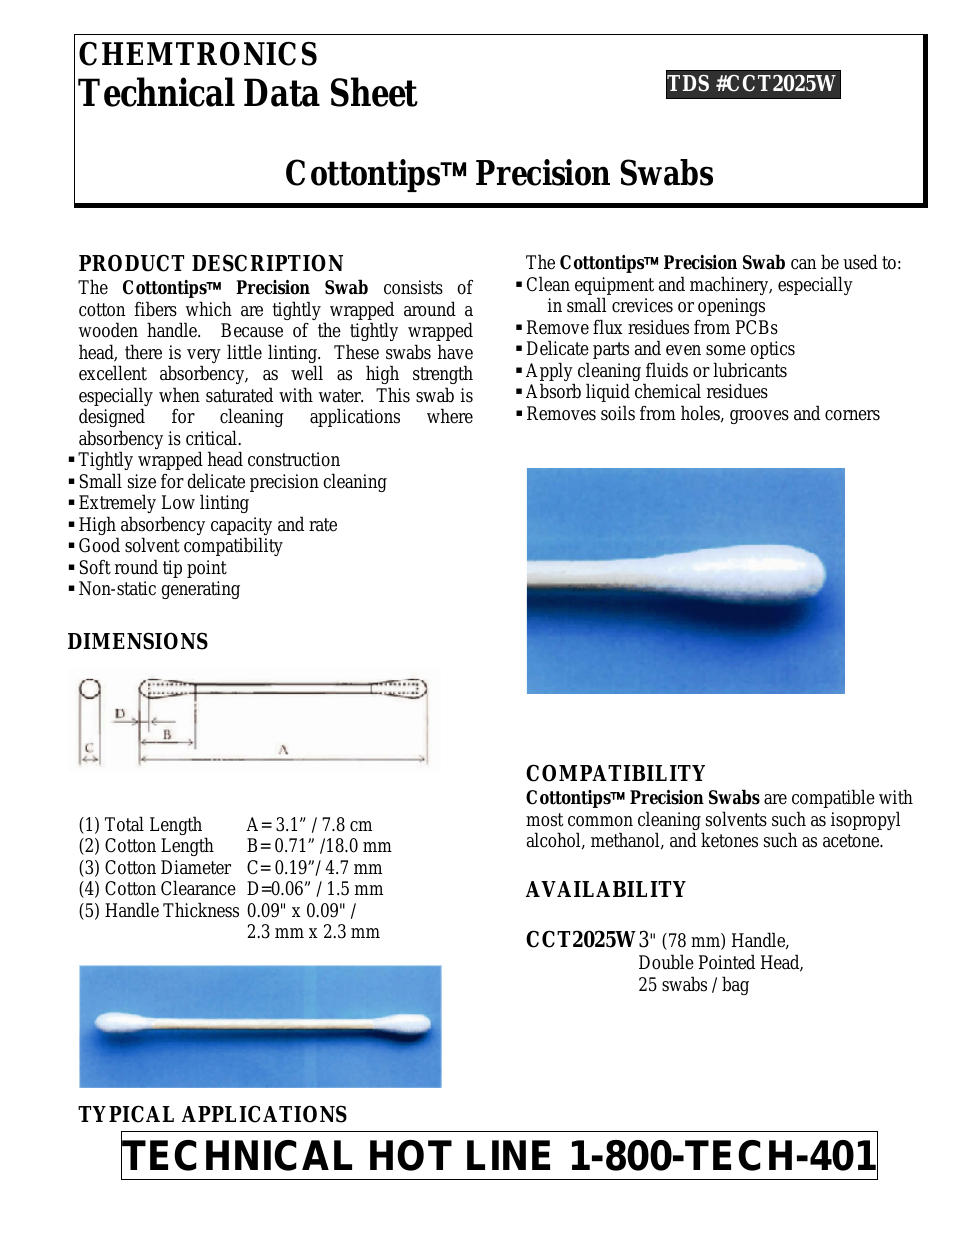 Cottontips Precision CCT2025W